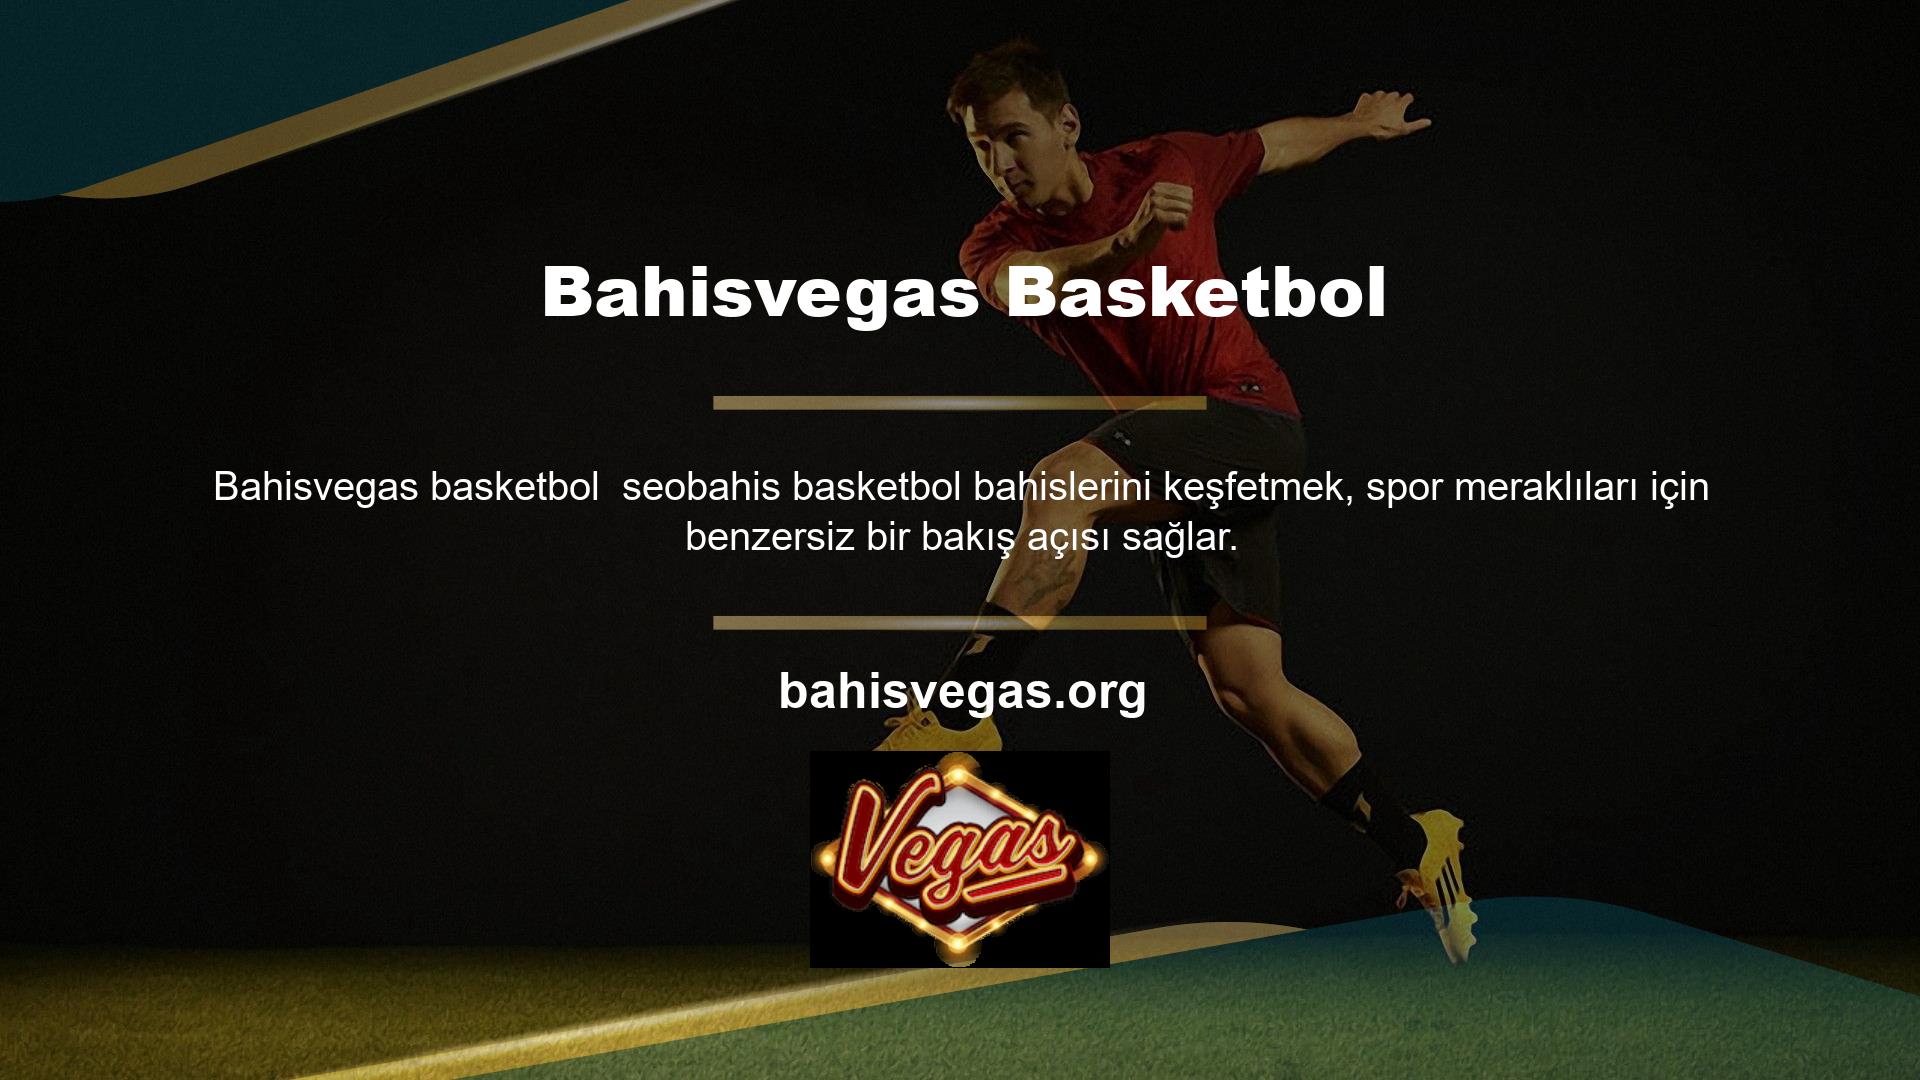 Bu site, önemli miktarda para çeken yüksek kaliteli basketbol bahisleriyle popülerdir